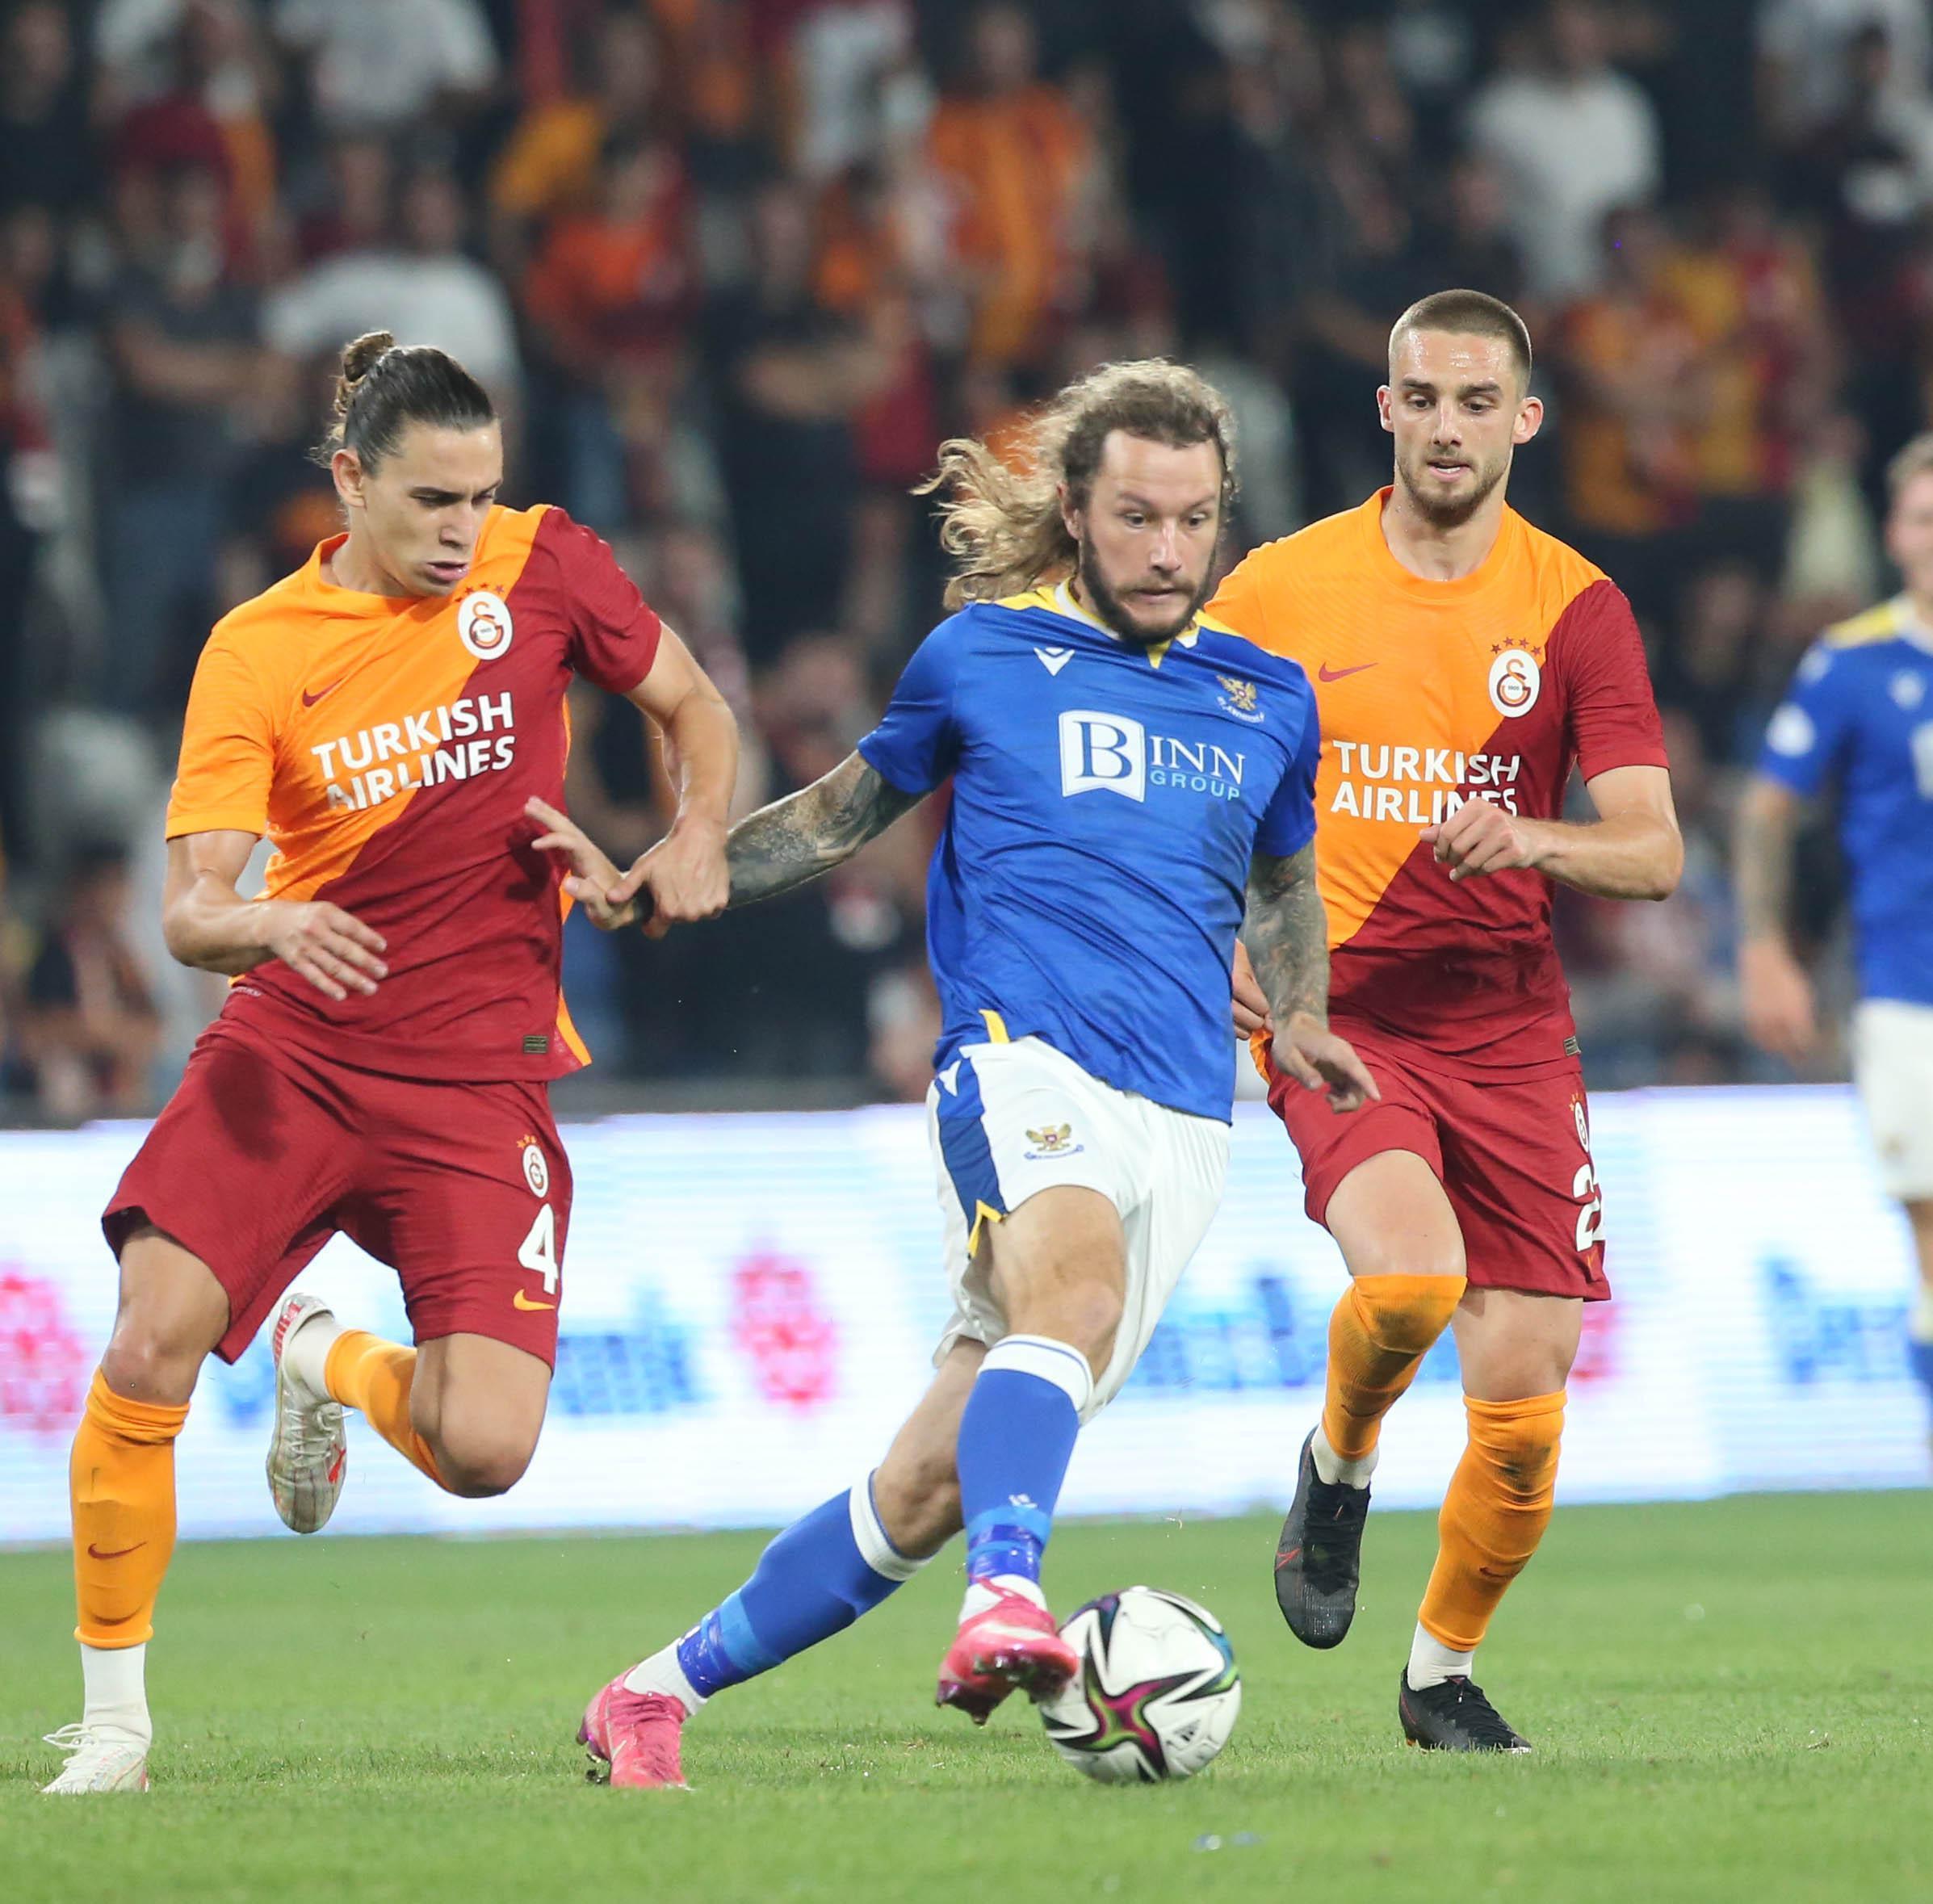 St. Johnstone - Galatasaray maçı şifresiz mi yayınlanacak St. Johnstone - Galatasaray maçı hangi kanalda